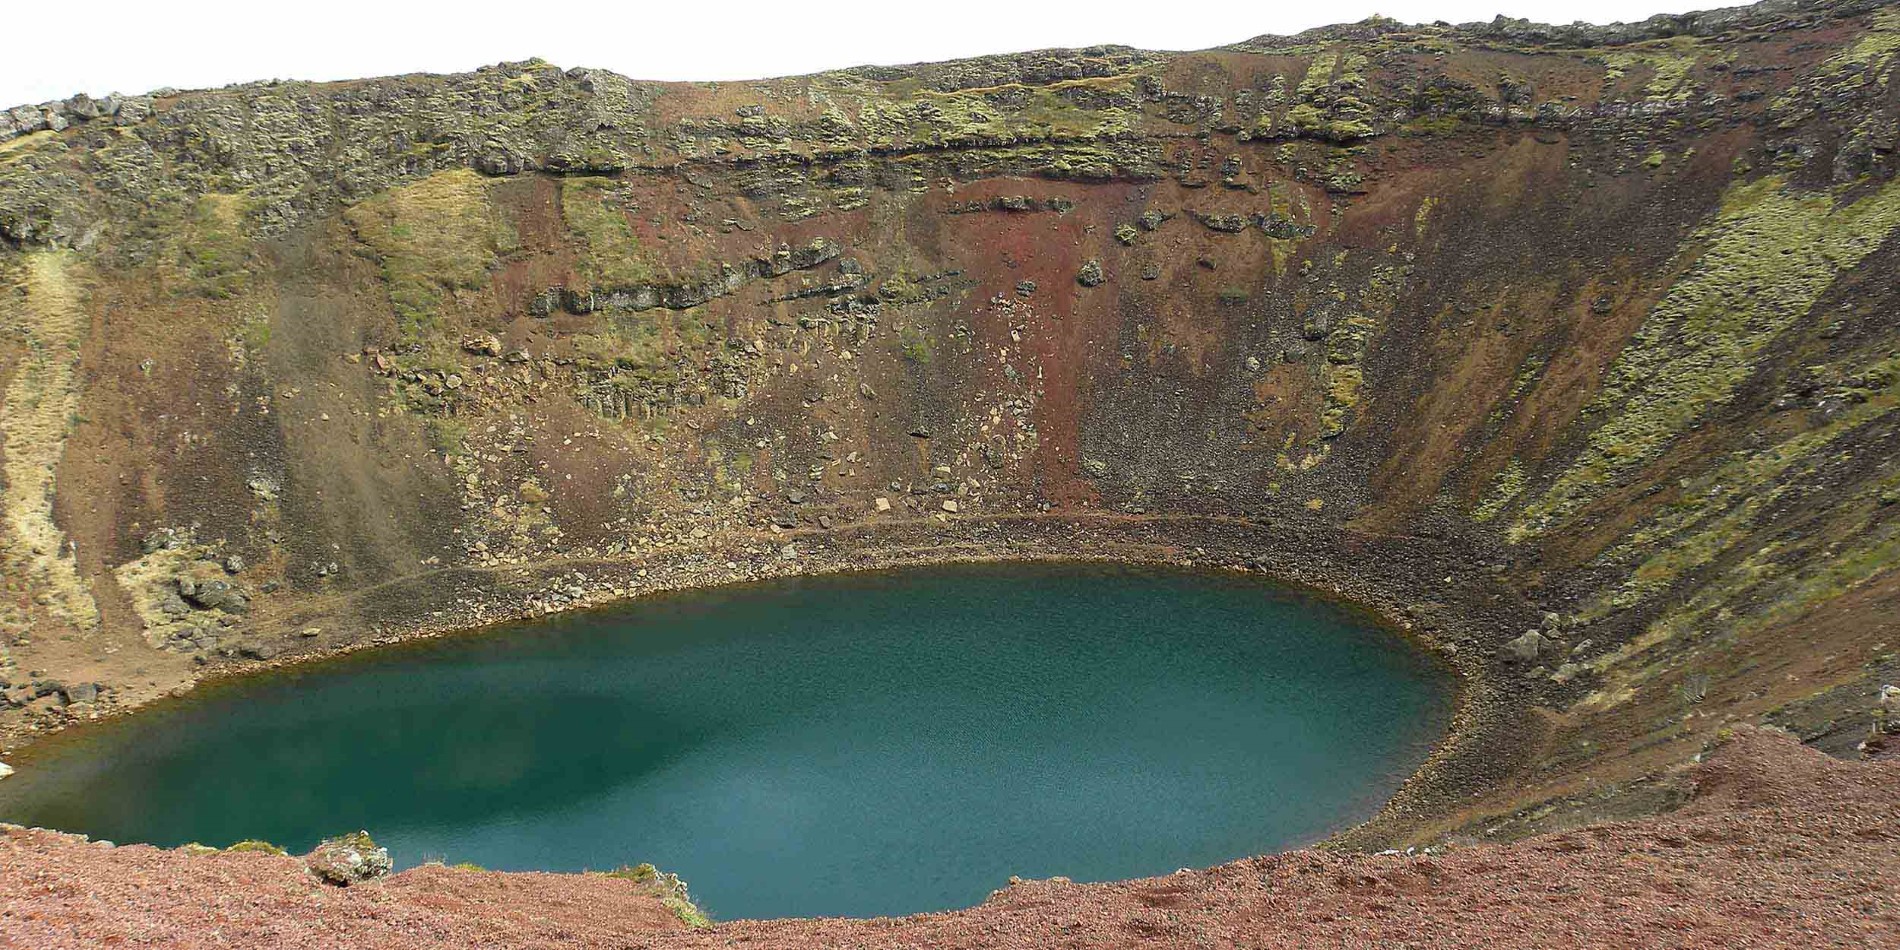 Wasser neben dem Felsen mit Big Hole im Hintergrund